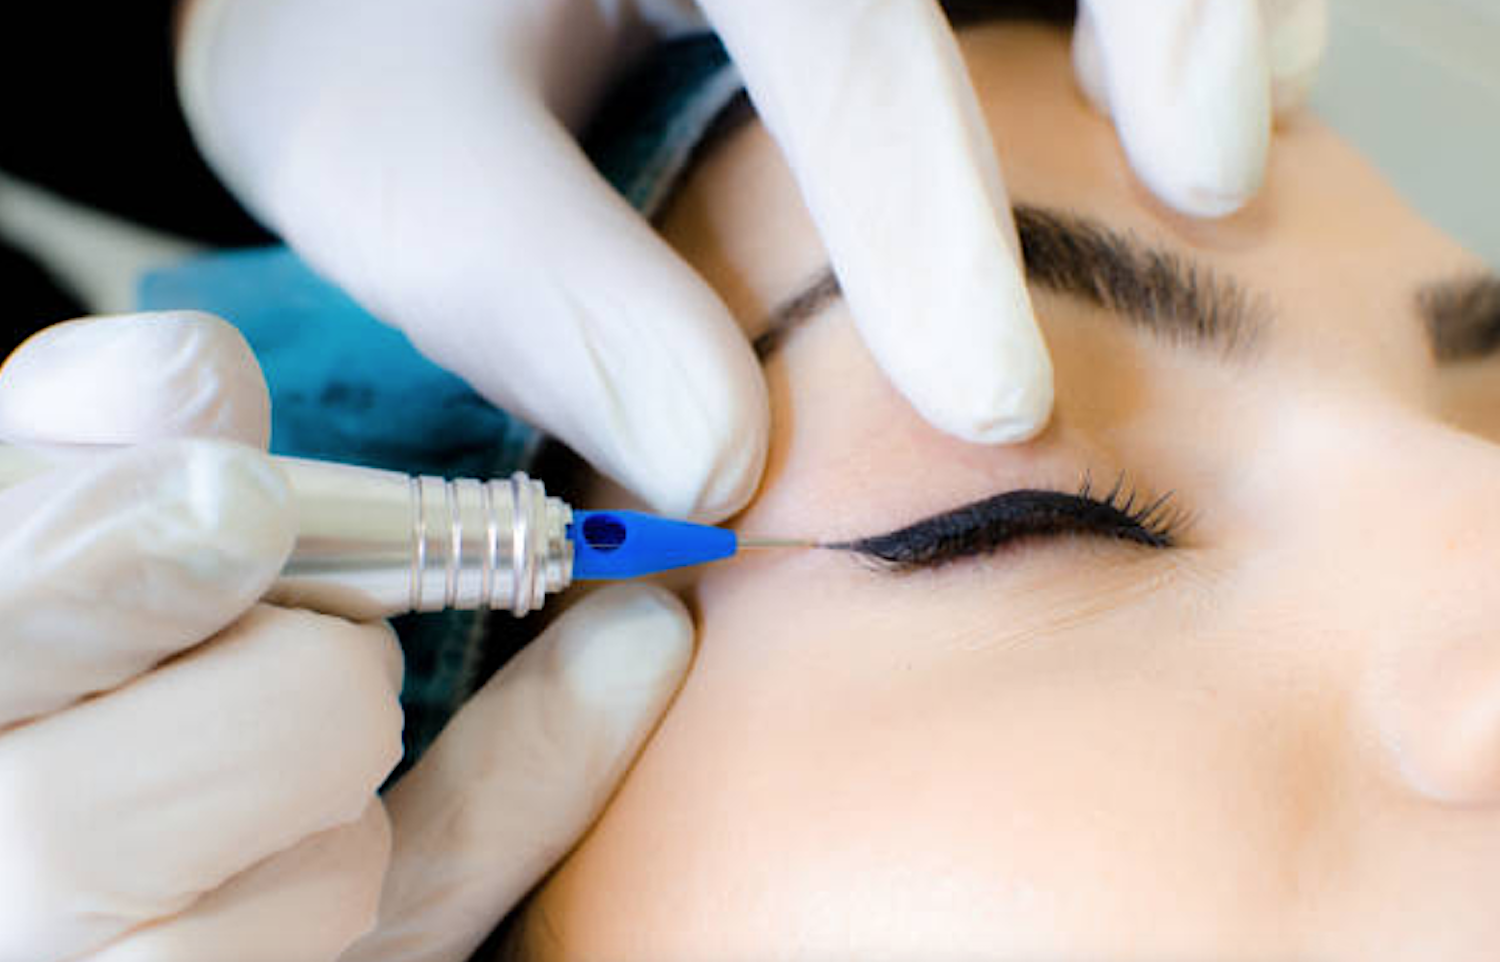 Permenent-Make-up Behandlung am Augenlid